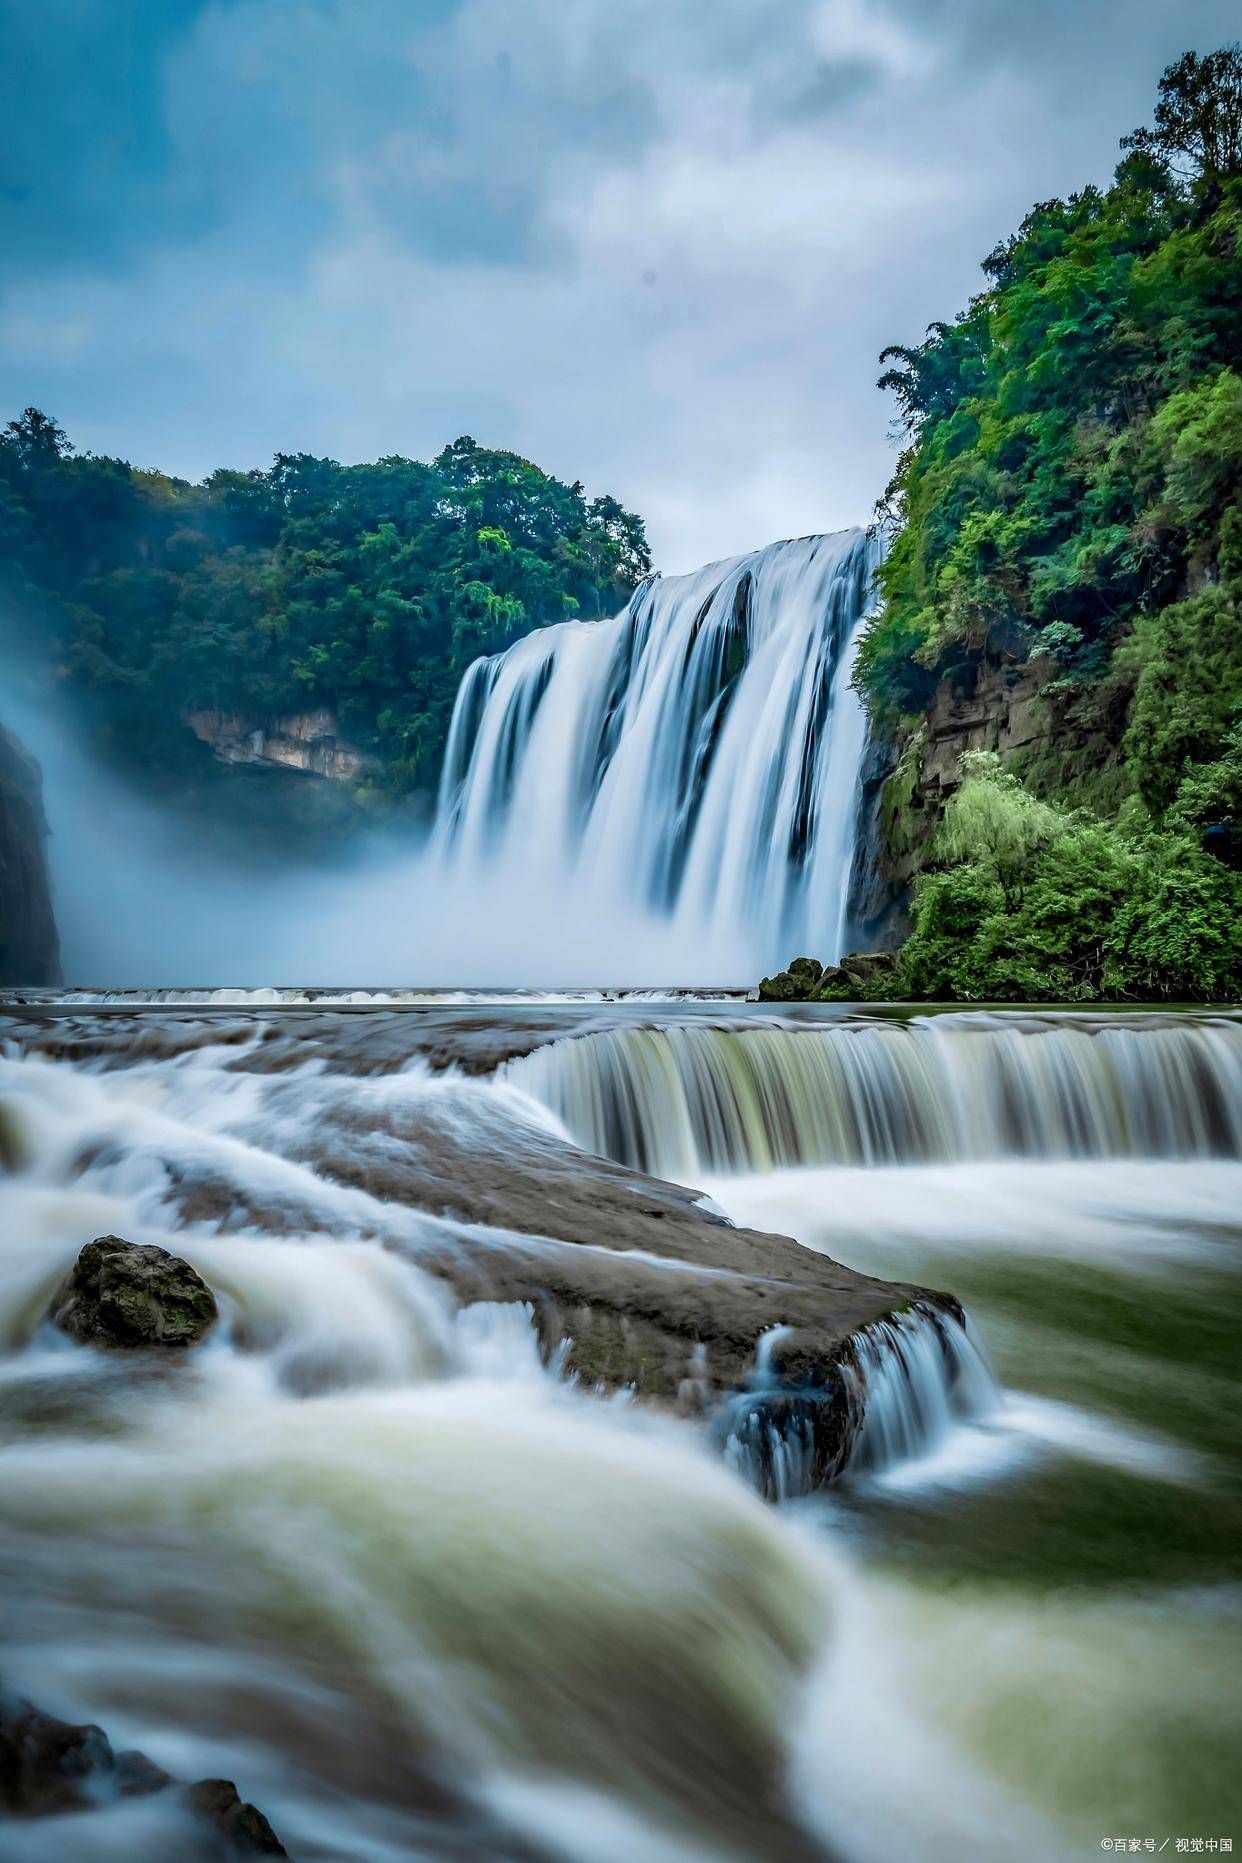 黄果树瀑布:黄果树瀑布是安顺著名景点,是中国著名的大瀑布之一,气势